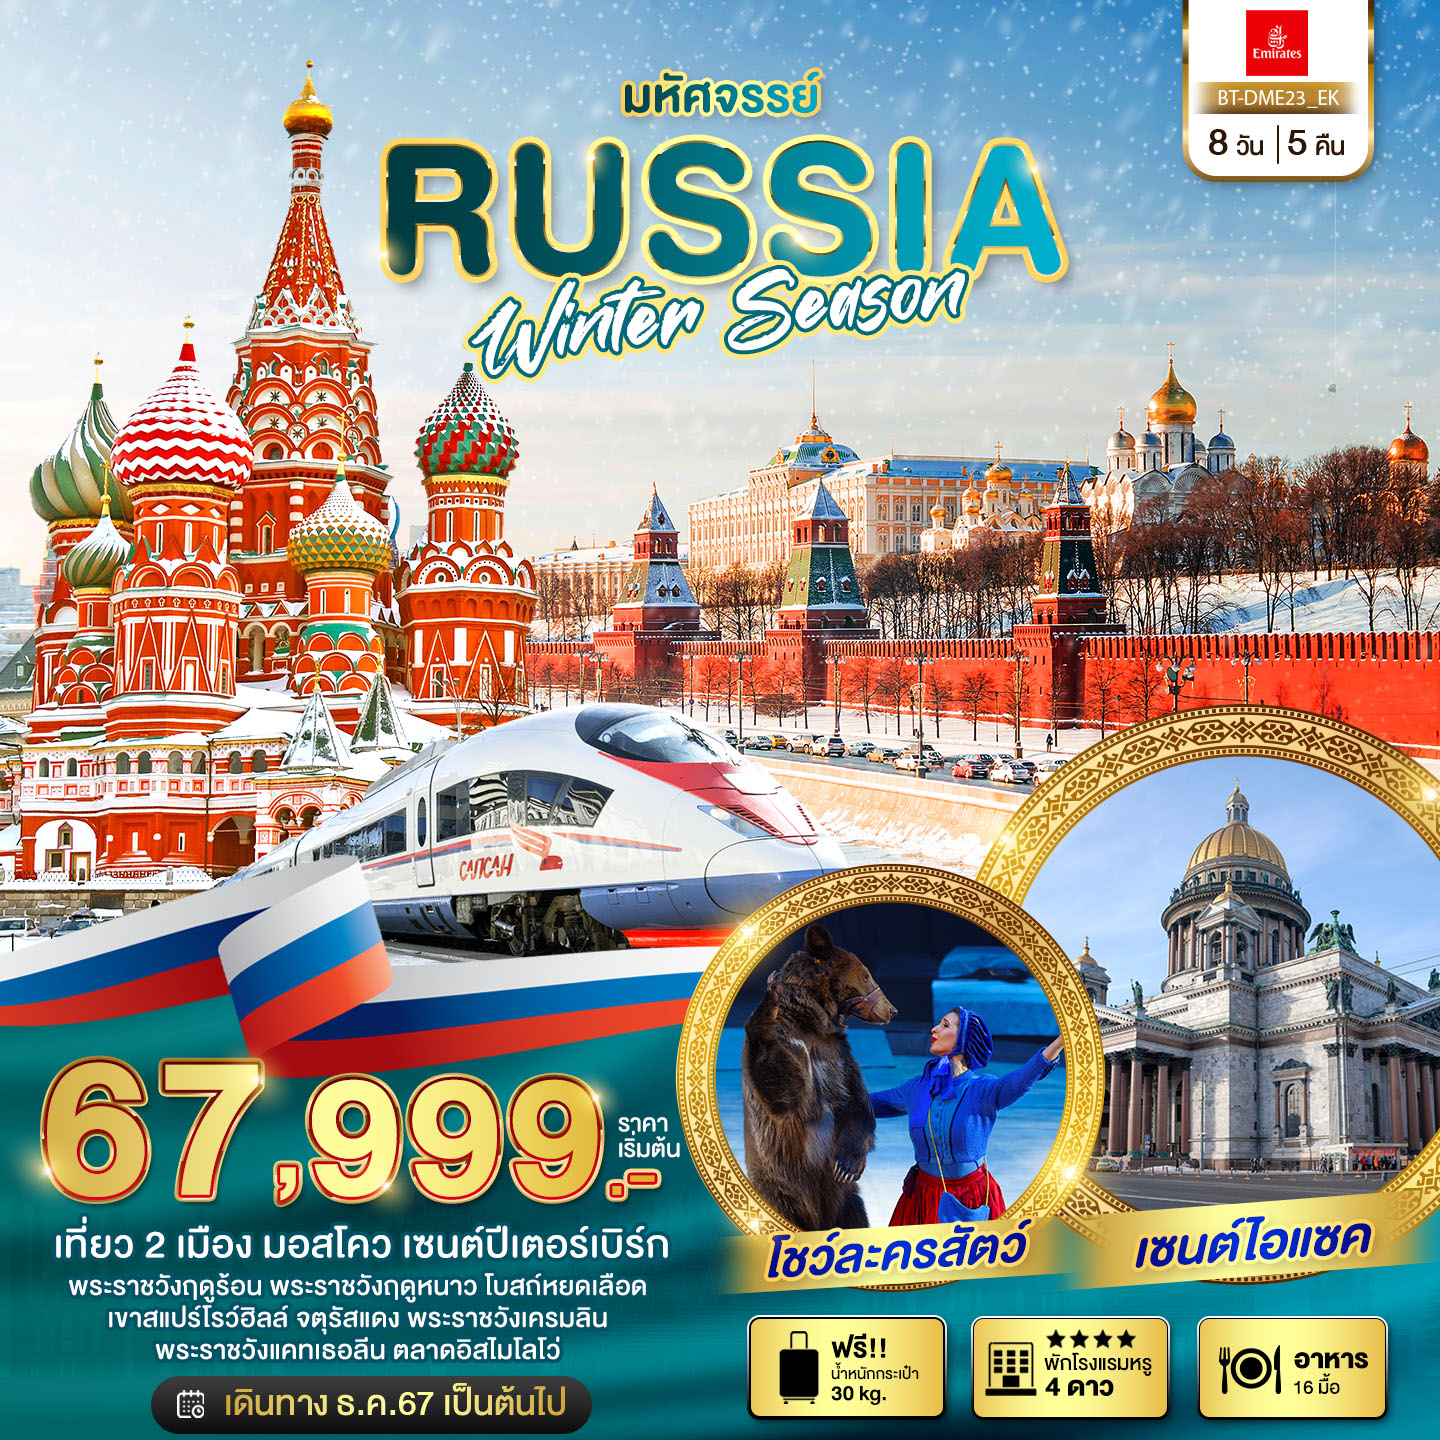 ทัวร์รัสเซีย มหัศจรรย์... รัสเซีย มอสโคว เซนต์ปีเตอร์เบิร์ก WINTER SEASON 8วัน 5คืน EK